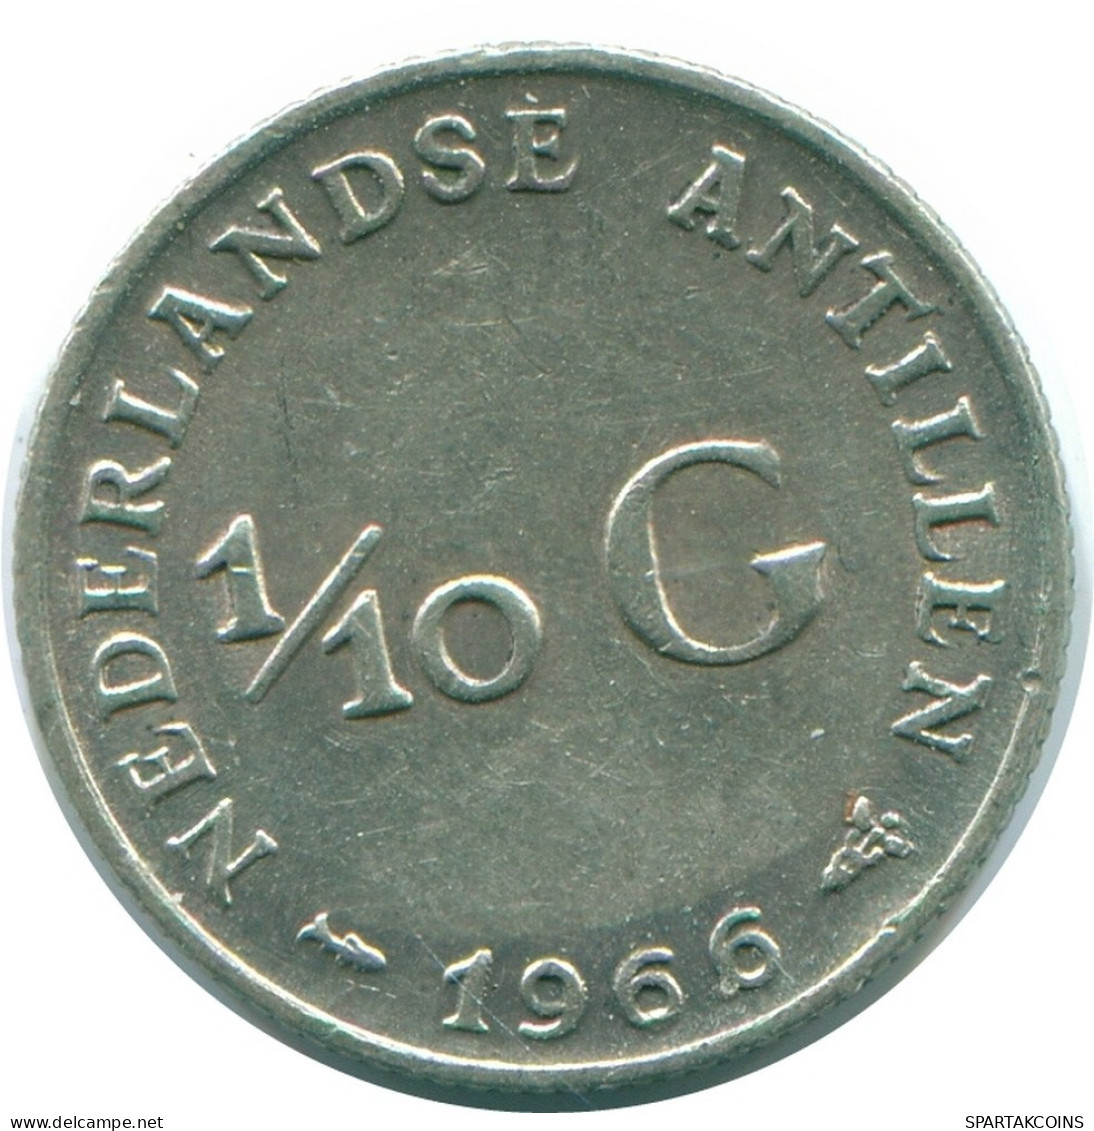 1/10 GULDEN 1966 NIEDERLÄNDISCHE ANTILLEN SILBER Koloniale Münze #NL12727.3.D.A - Antillas Neerlandesas